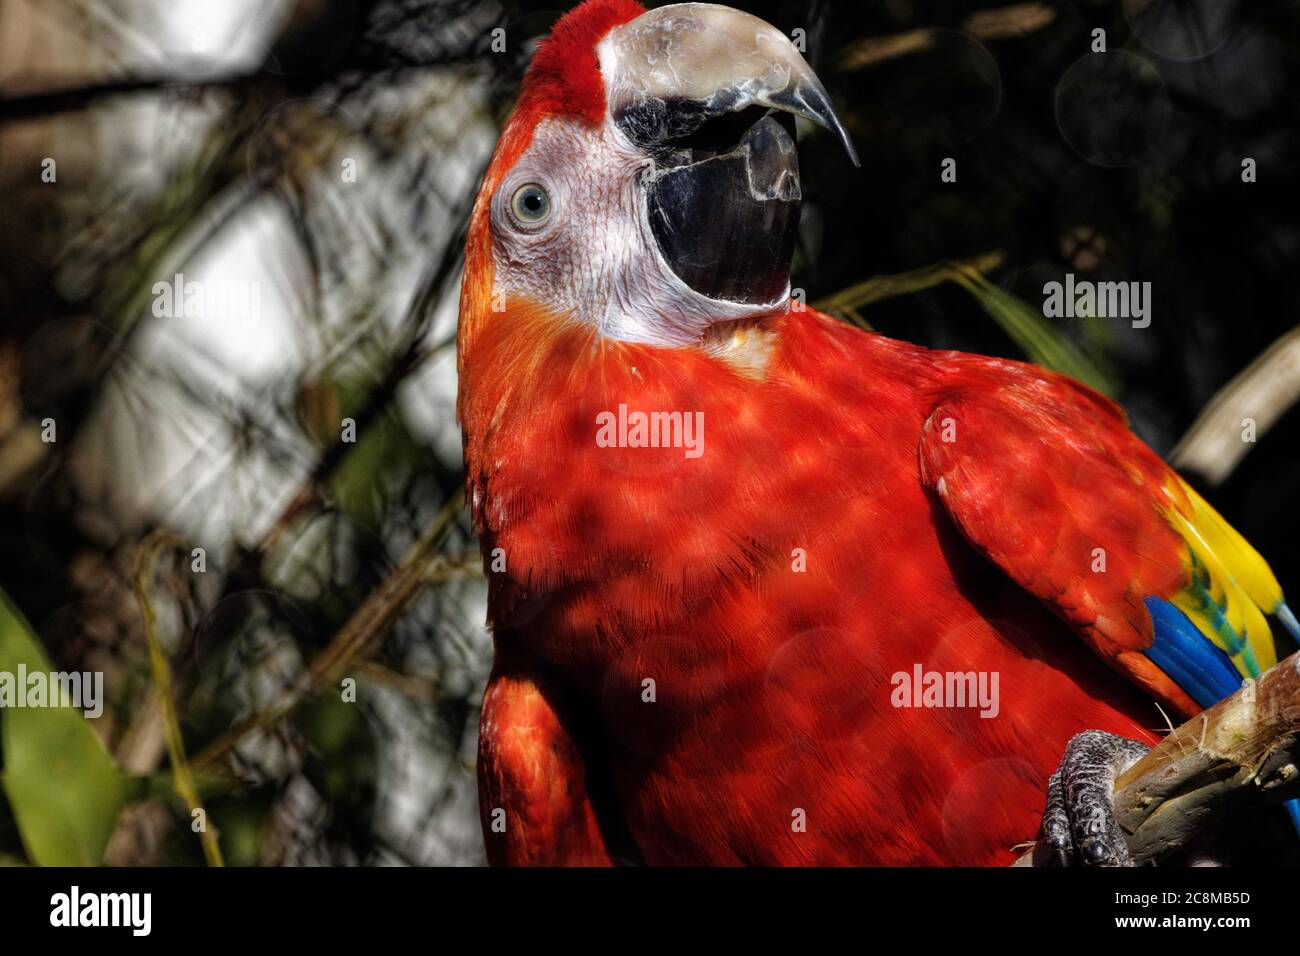 La macarque (Ara macao) est un grand perroquet rouge, jaune et bleu d'Amérique centrale et du Sud, membre d'un grand groupe de perroquets néotropicaux. Banque D'Images